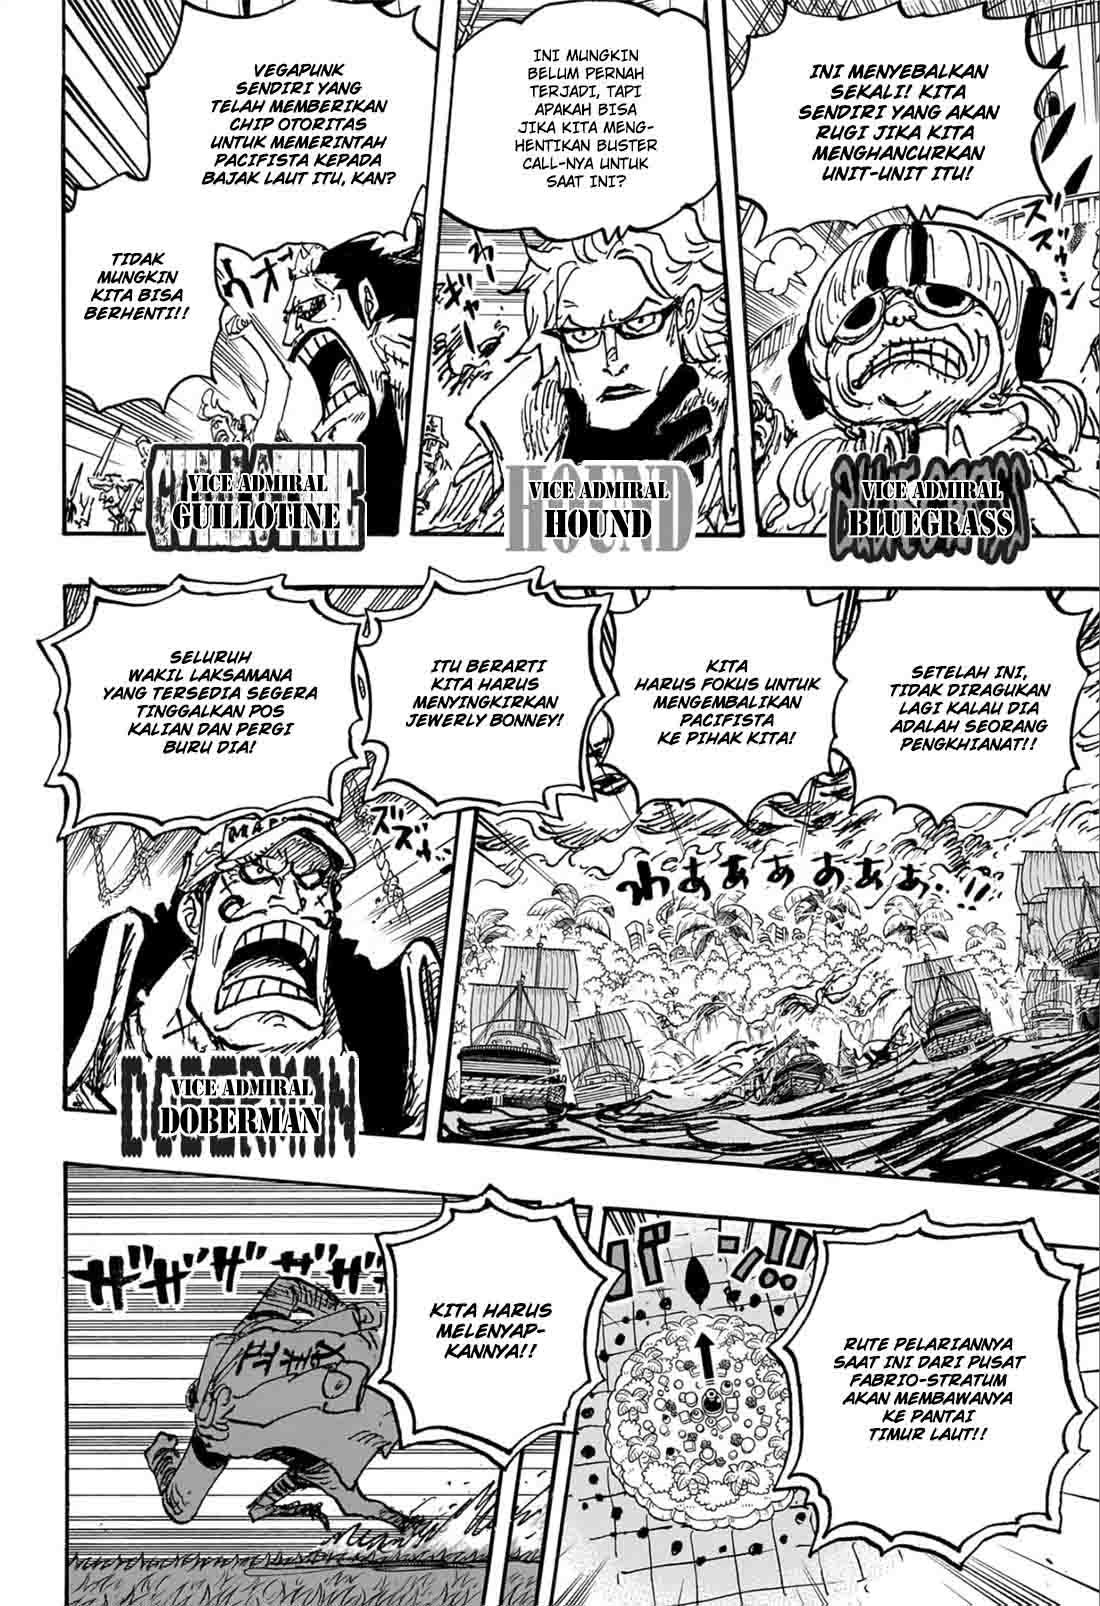 Baca manga komik One Piece Berwarna Bahasa Indonesia HD Chapter 1108